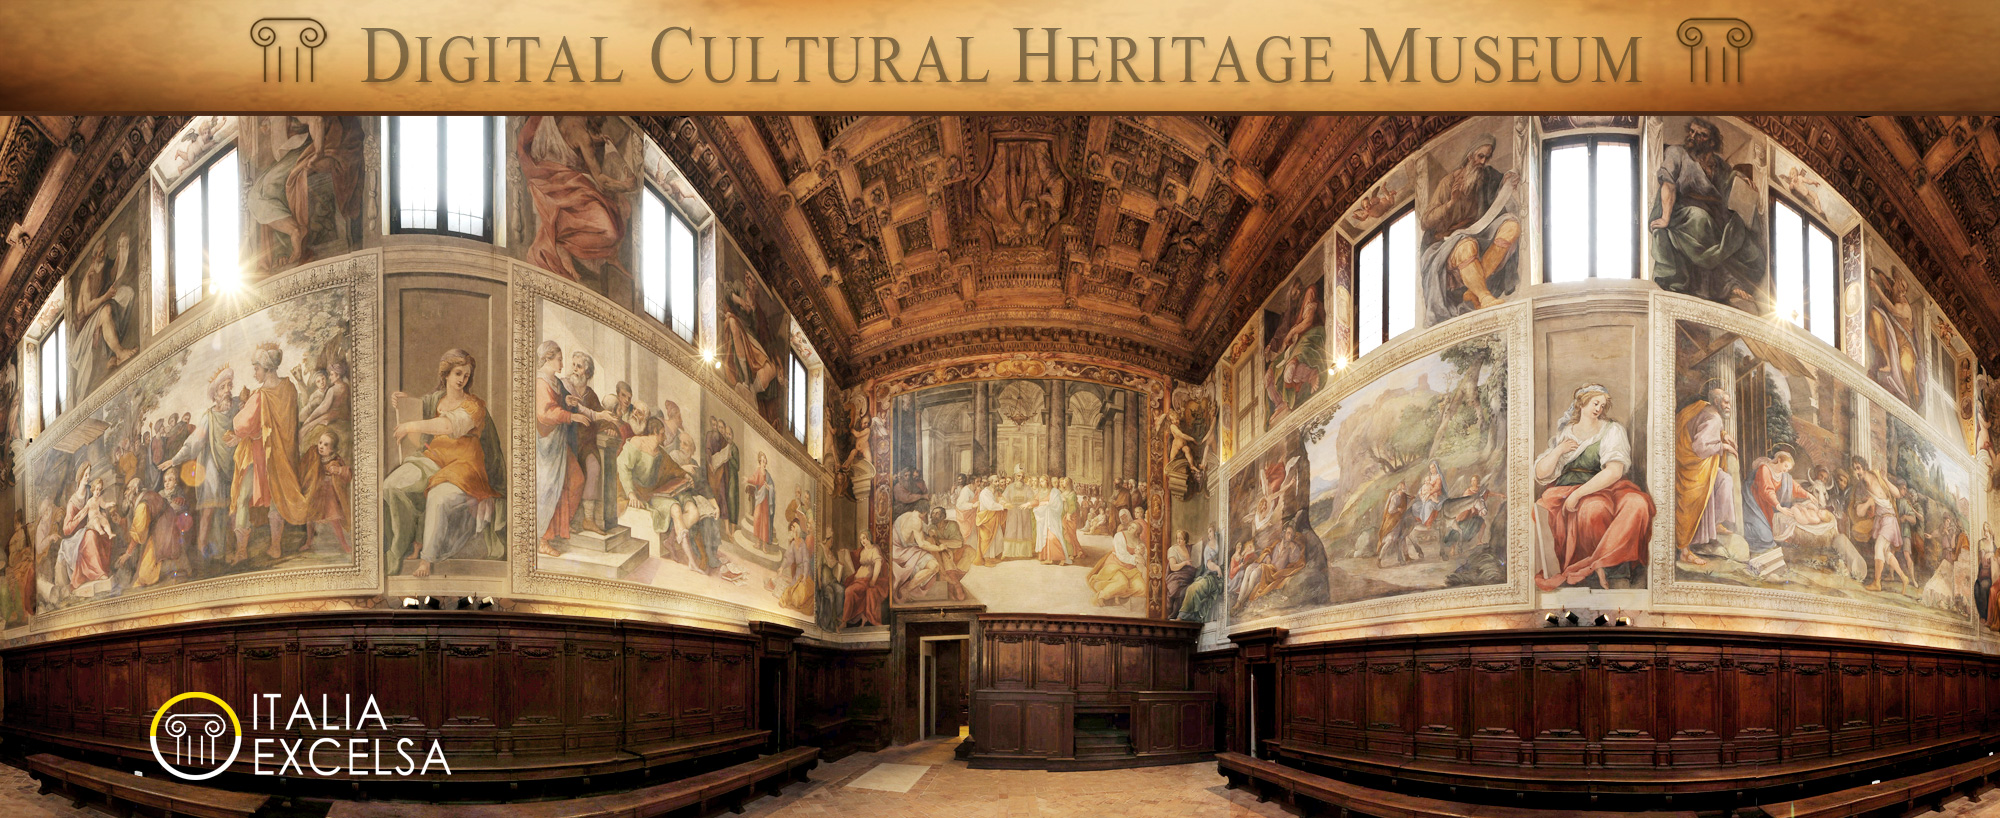 Italia Excelsa - Digital Cultural Heritage Museum - Fabio Gallo